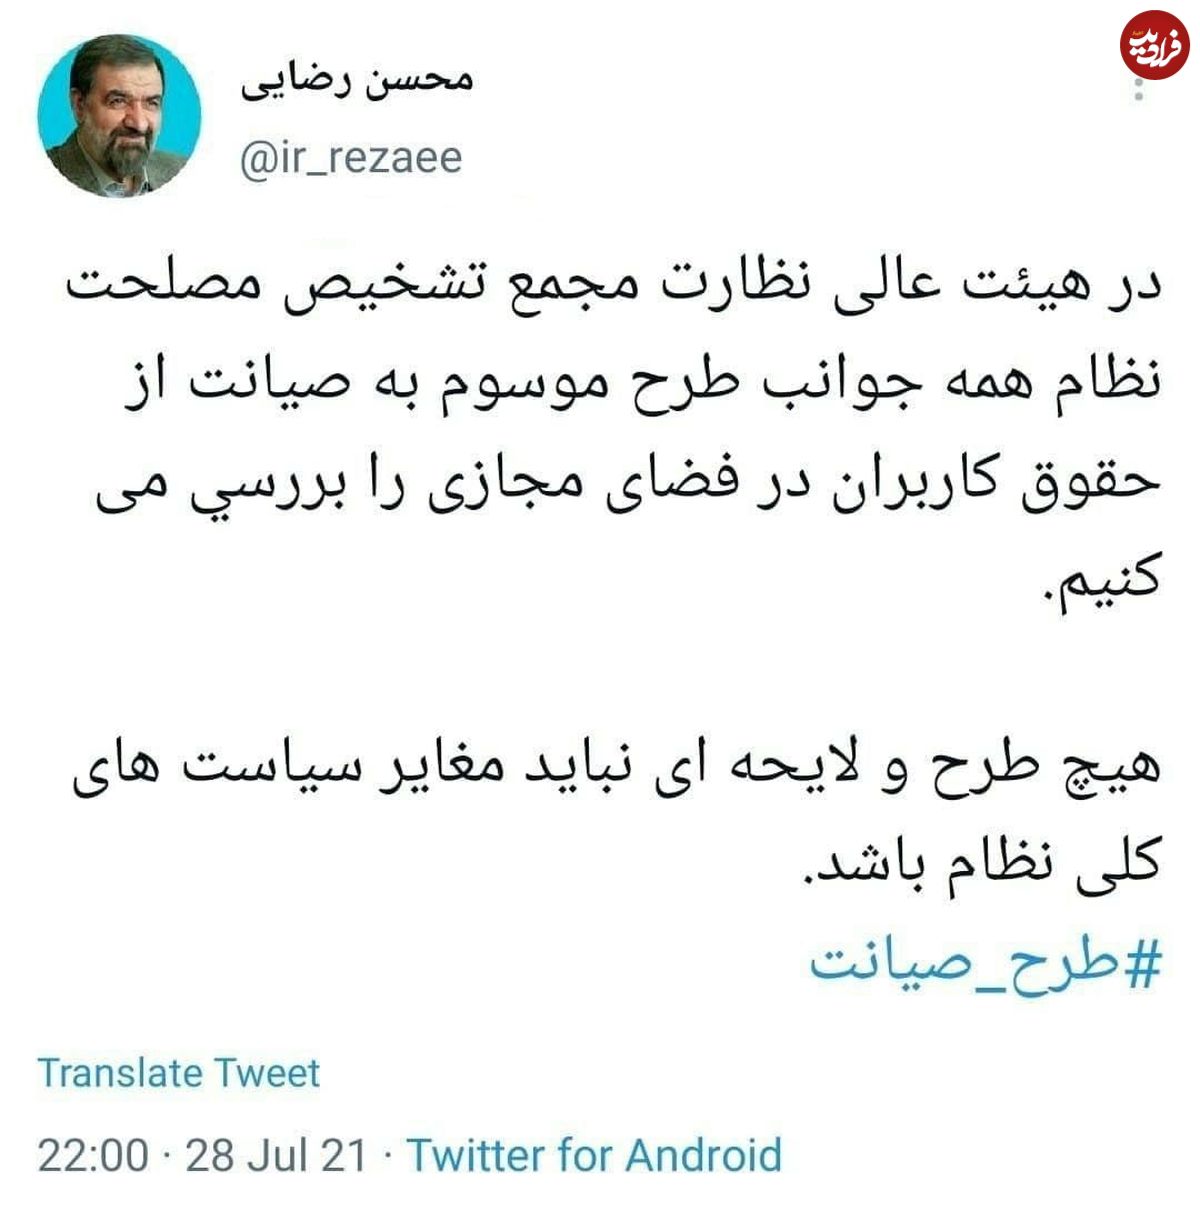 محسن رضایی علیه طرح اینترنتی مجلس